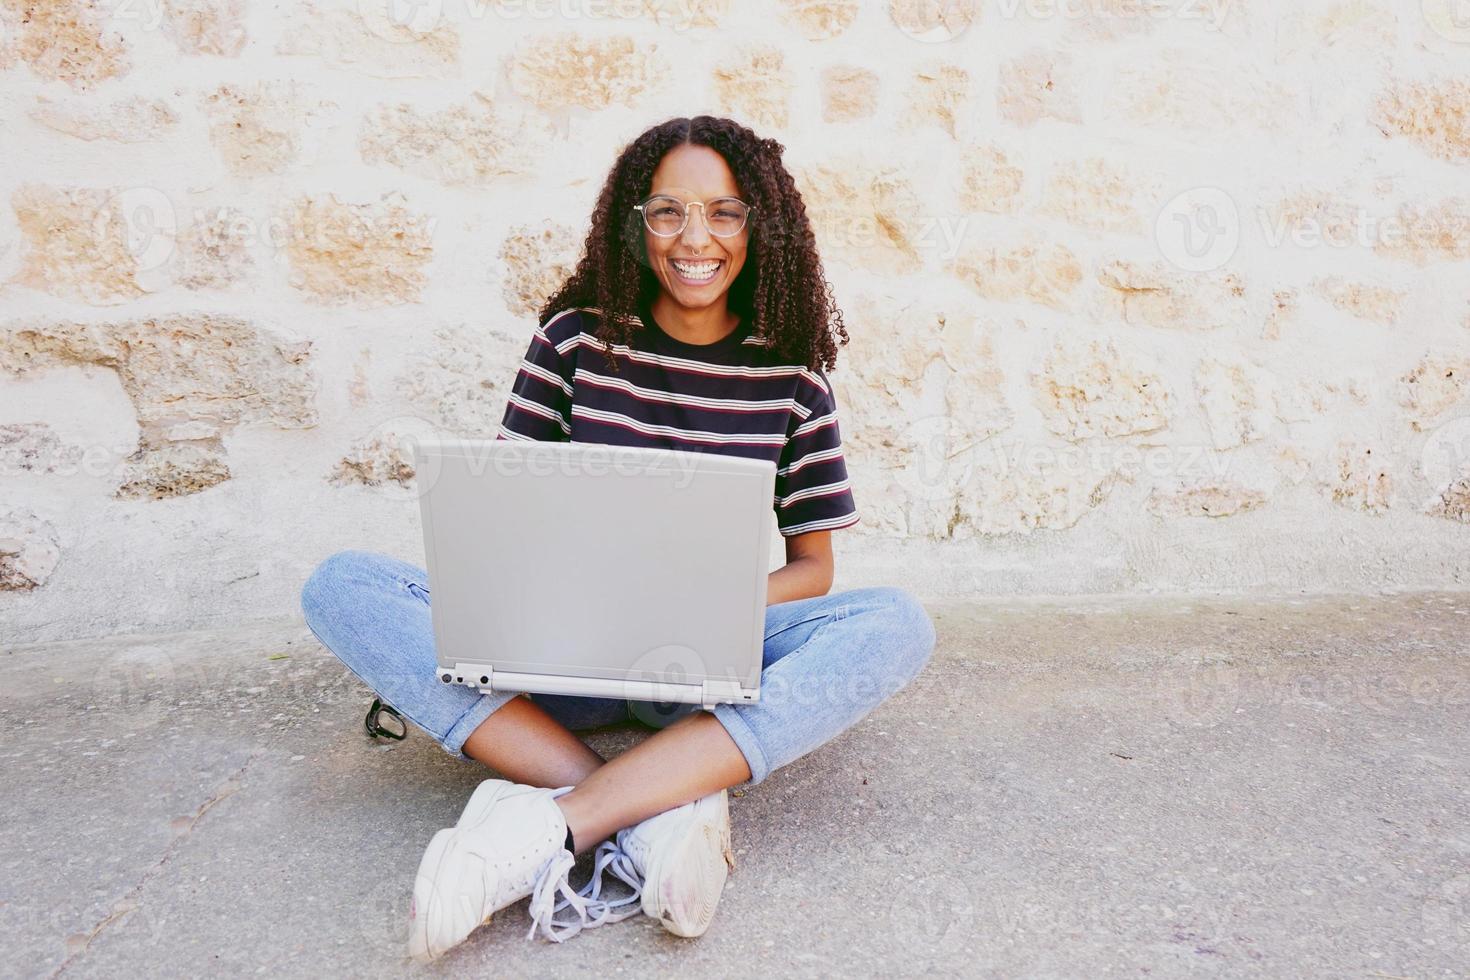 Un retrato de una mujer negra joven y sonriente feliz con el pelo rizado con gafas, jeans y una camiseta a rayas, sentada en el suelo y trabajando o haciendo la tarea foto